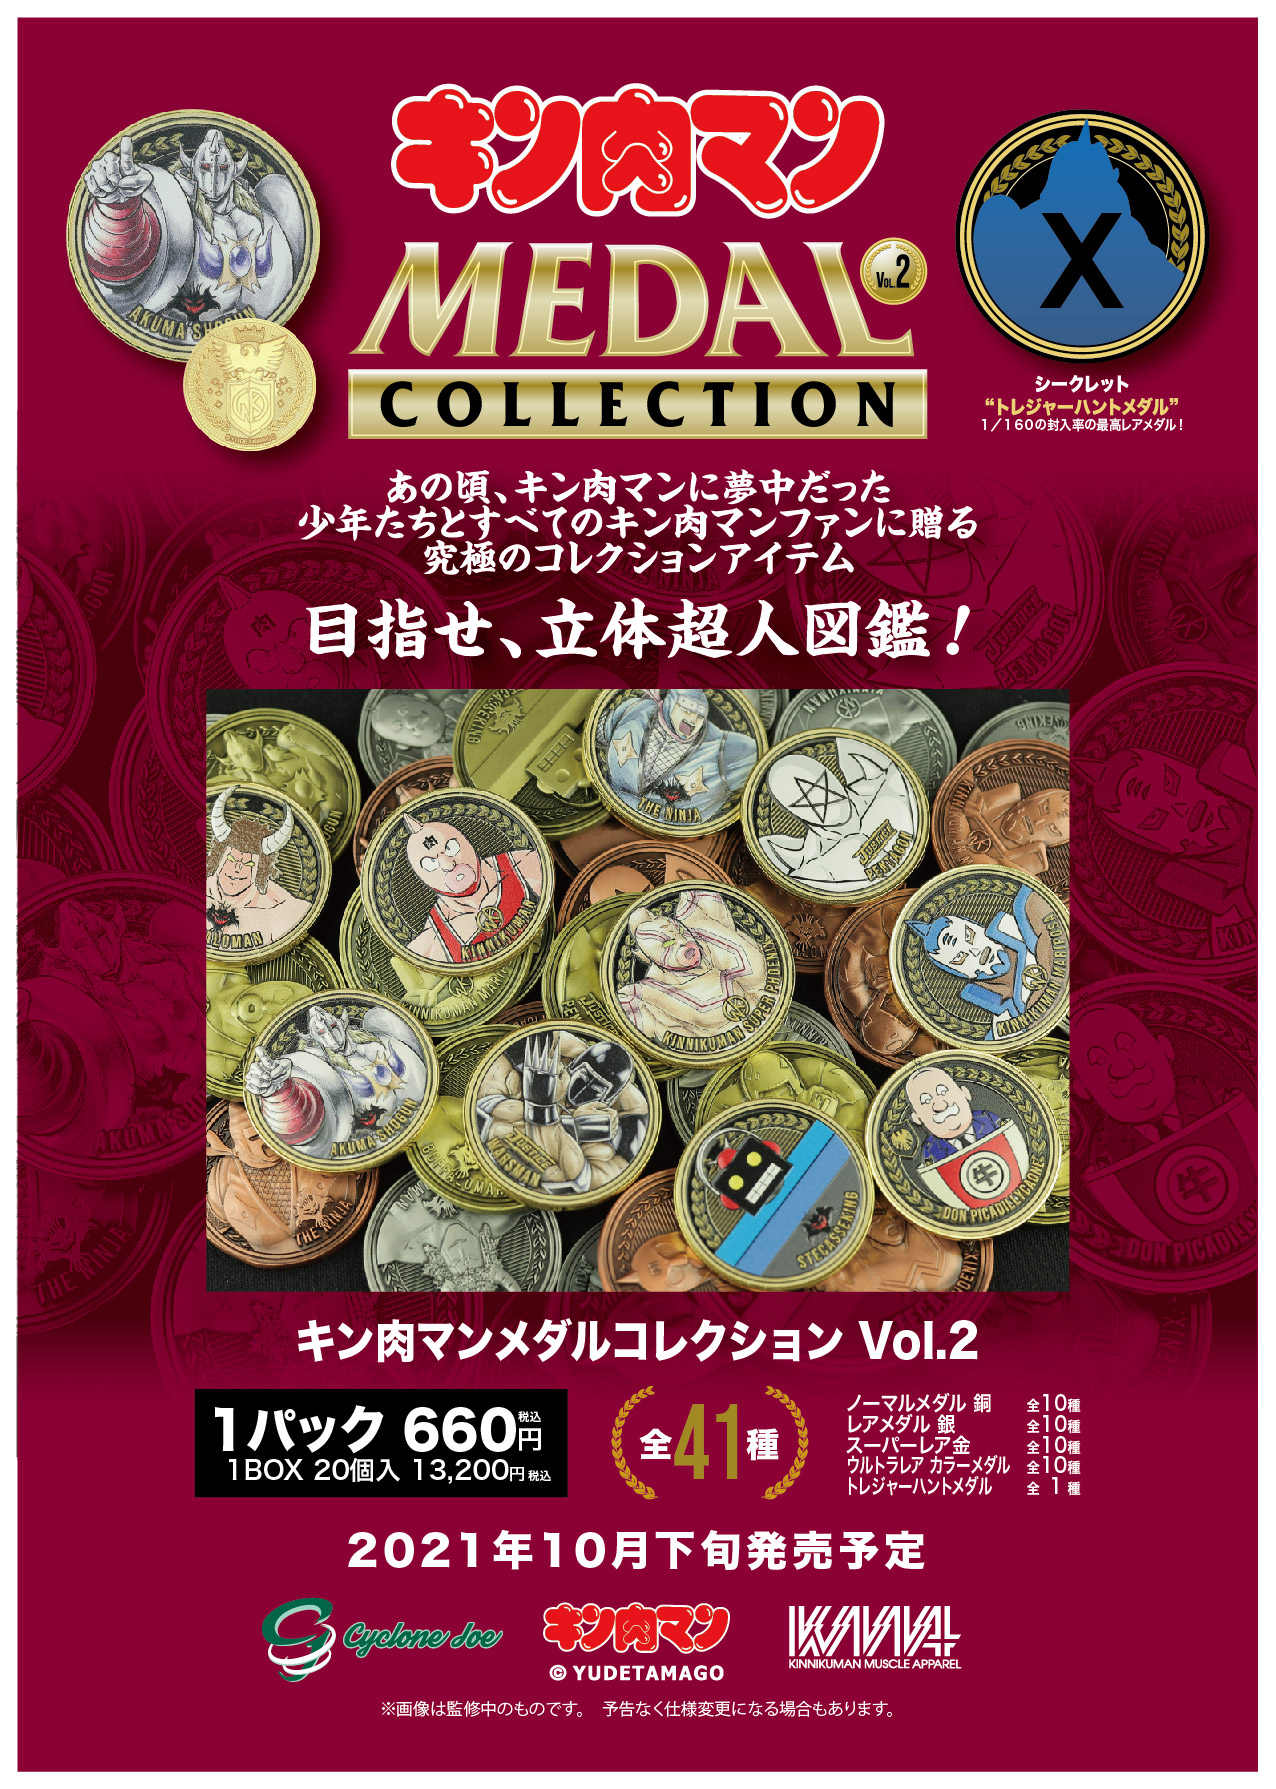 KMA×CYCLONEJOE『キン肉マンメダルコレクション VOL.2』 めざせ立体超人図鑑コンプリート！1BOX(20個入り)の購入特典はなんと 金ピカ KIN(金)肉メダルは『ゆでたまご先生』！ のサブ画像3